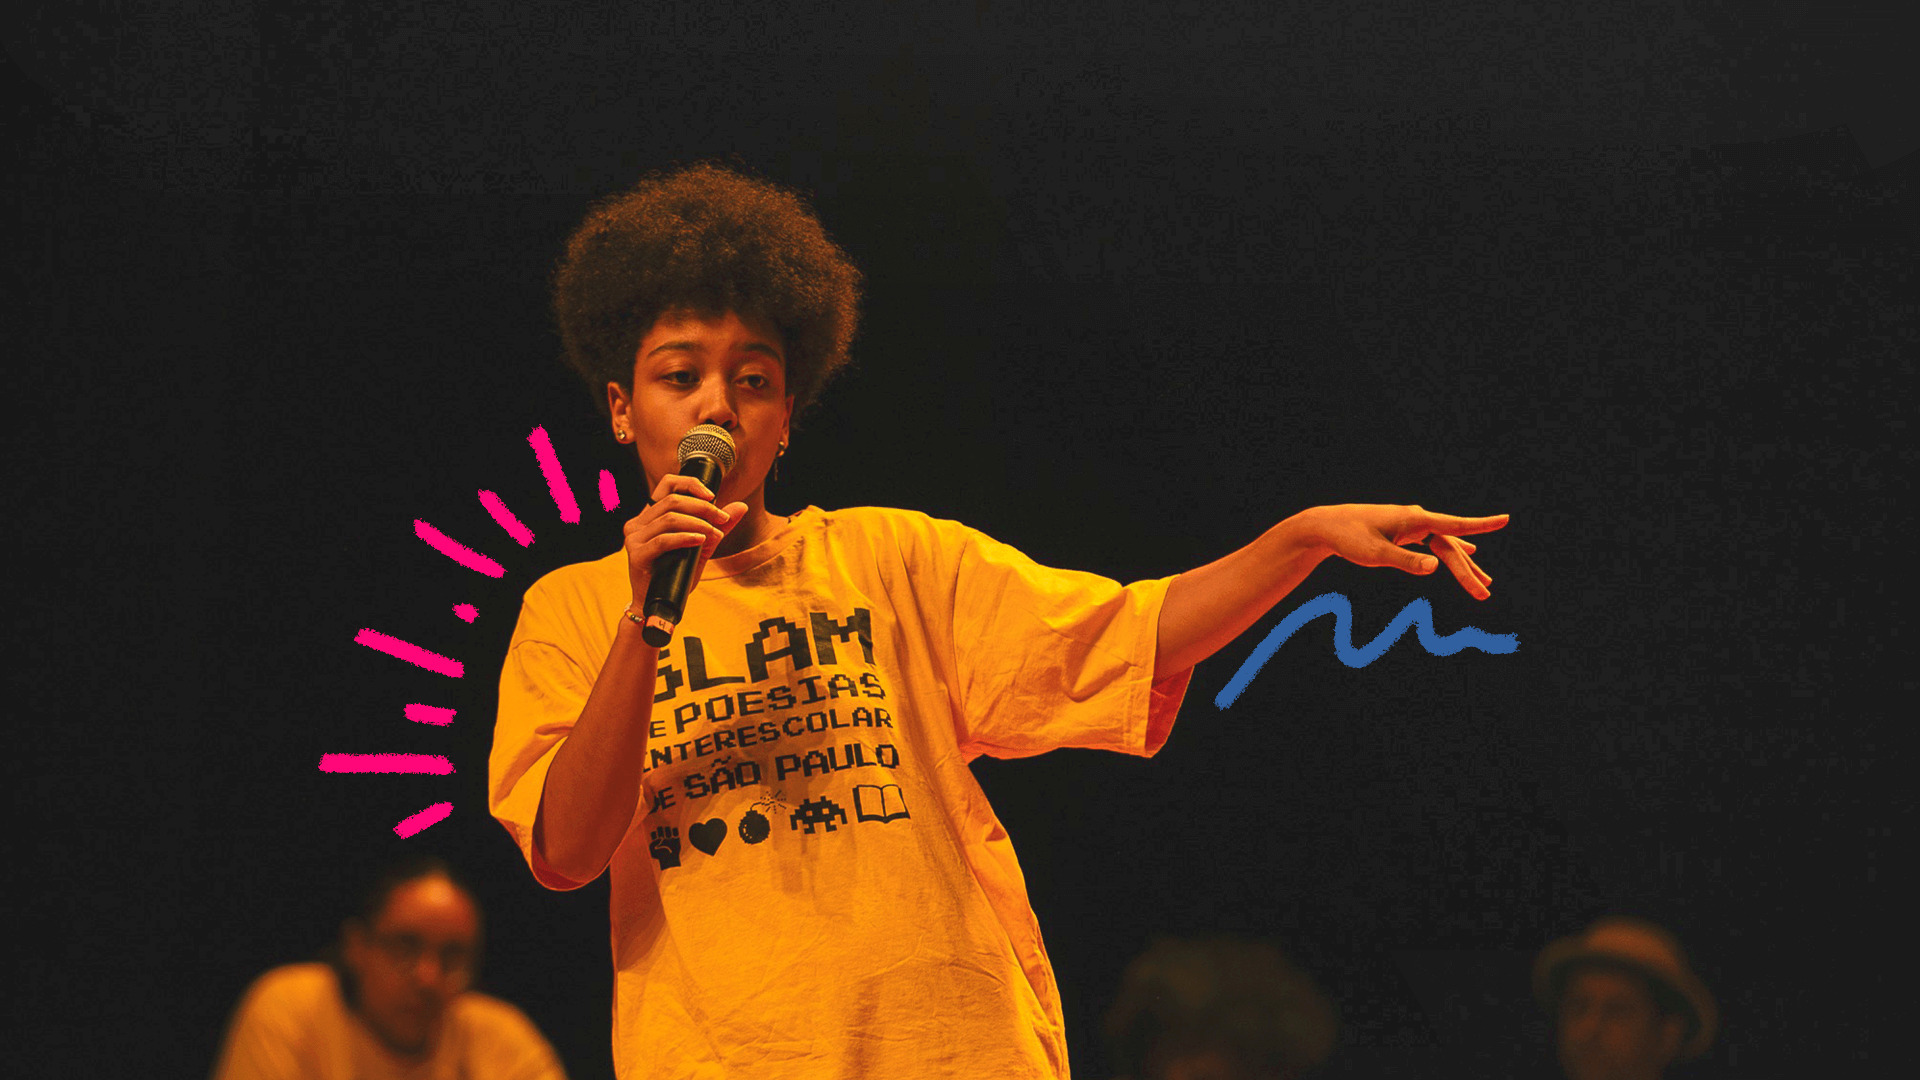 Uma jovem negra de camiseta amarela com a palavra "slam" estampada está segurando um microfone